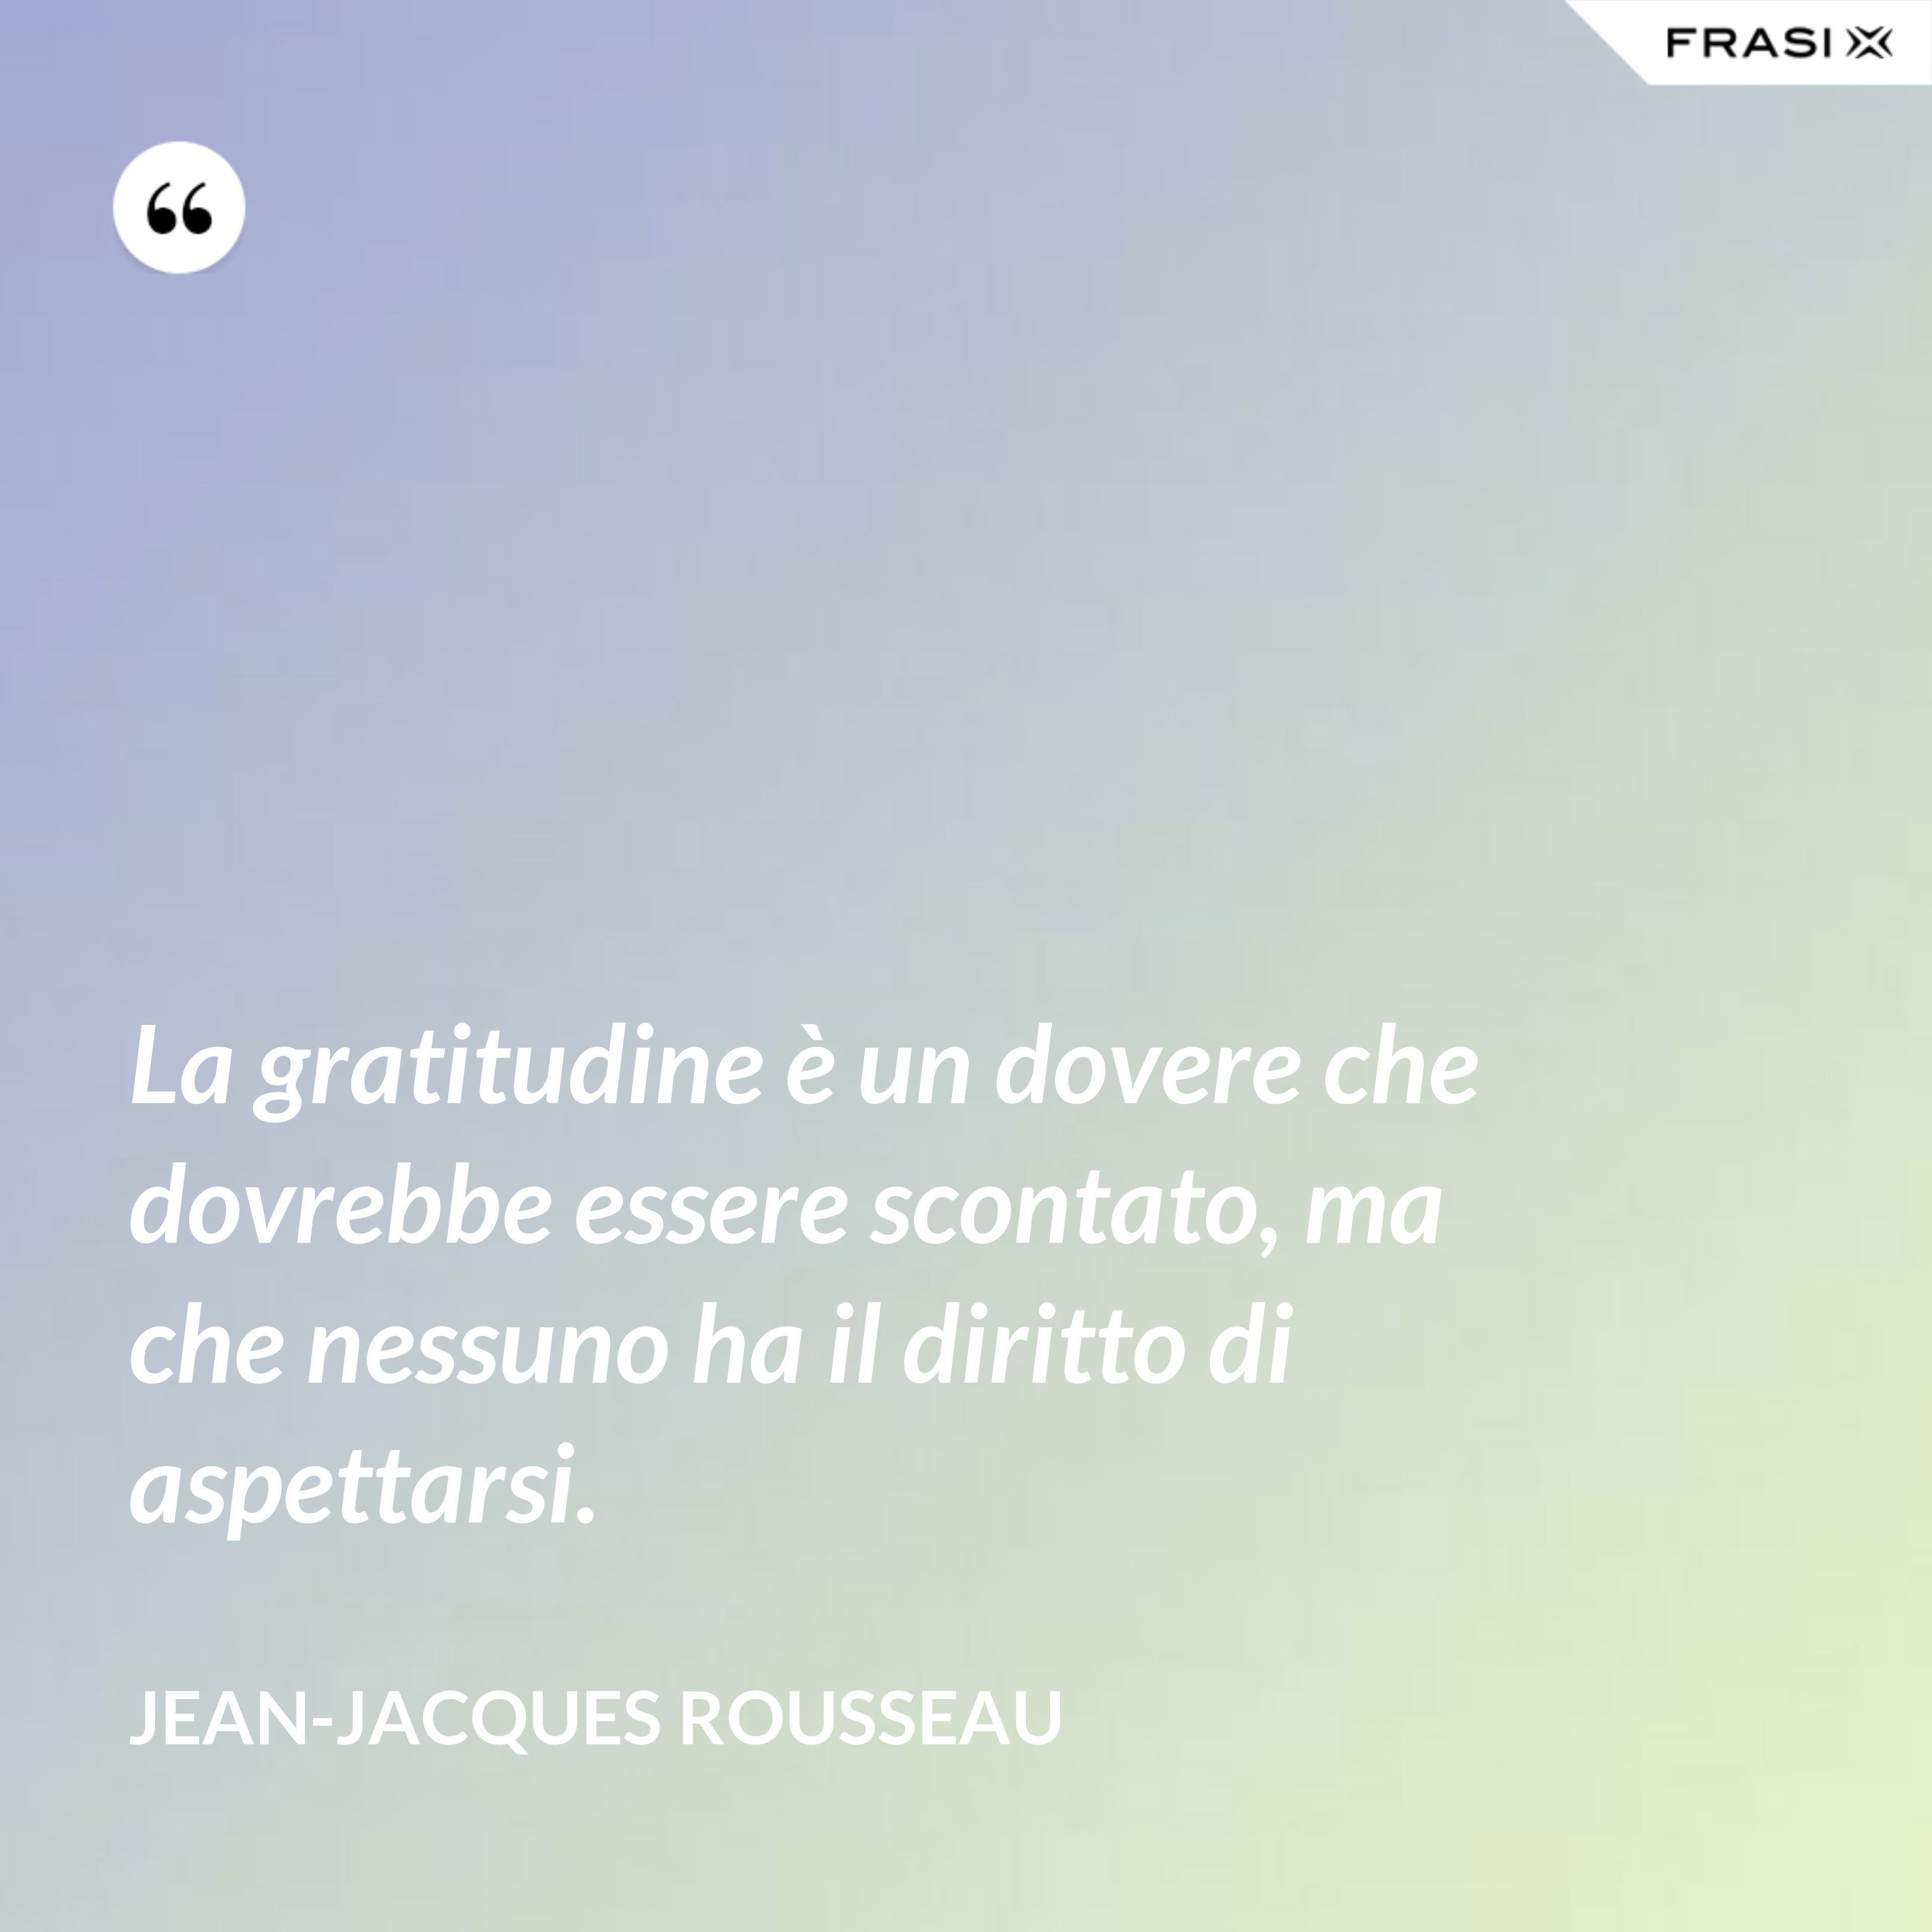 La gratitudine è un dovere che dovrebbe essere scontato, ma che nessuno ha il diritto di aspettarsi. - Jean-Jacques Rousseau